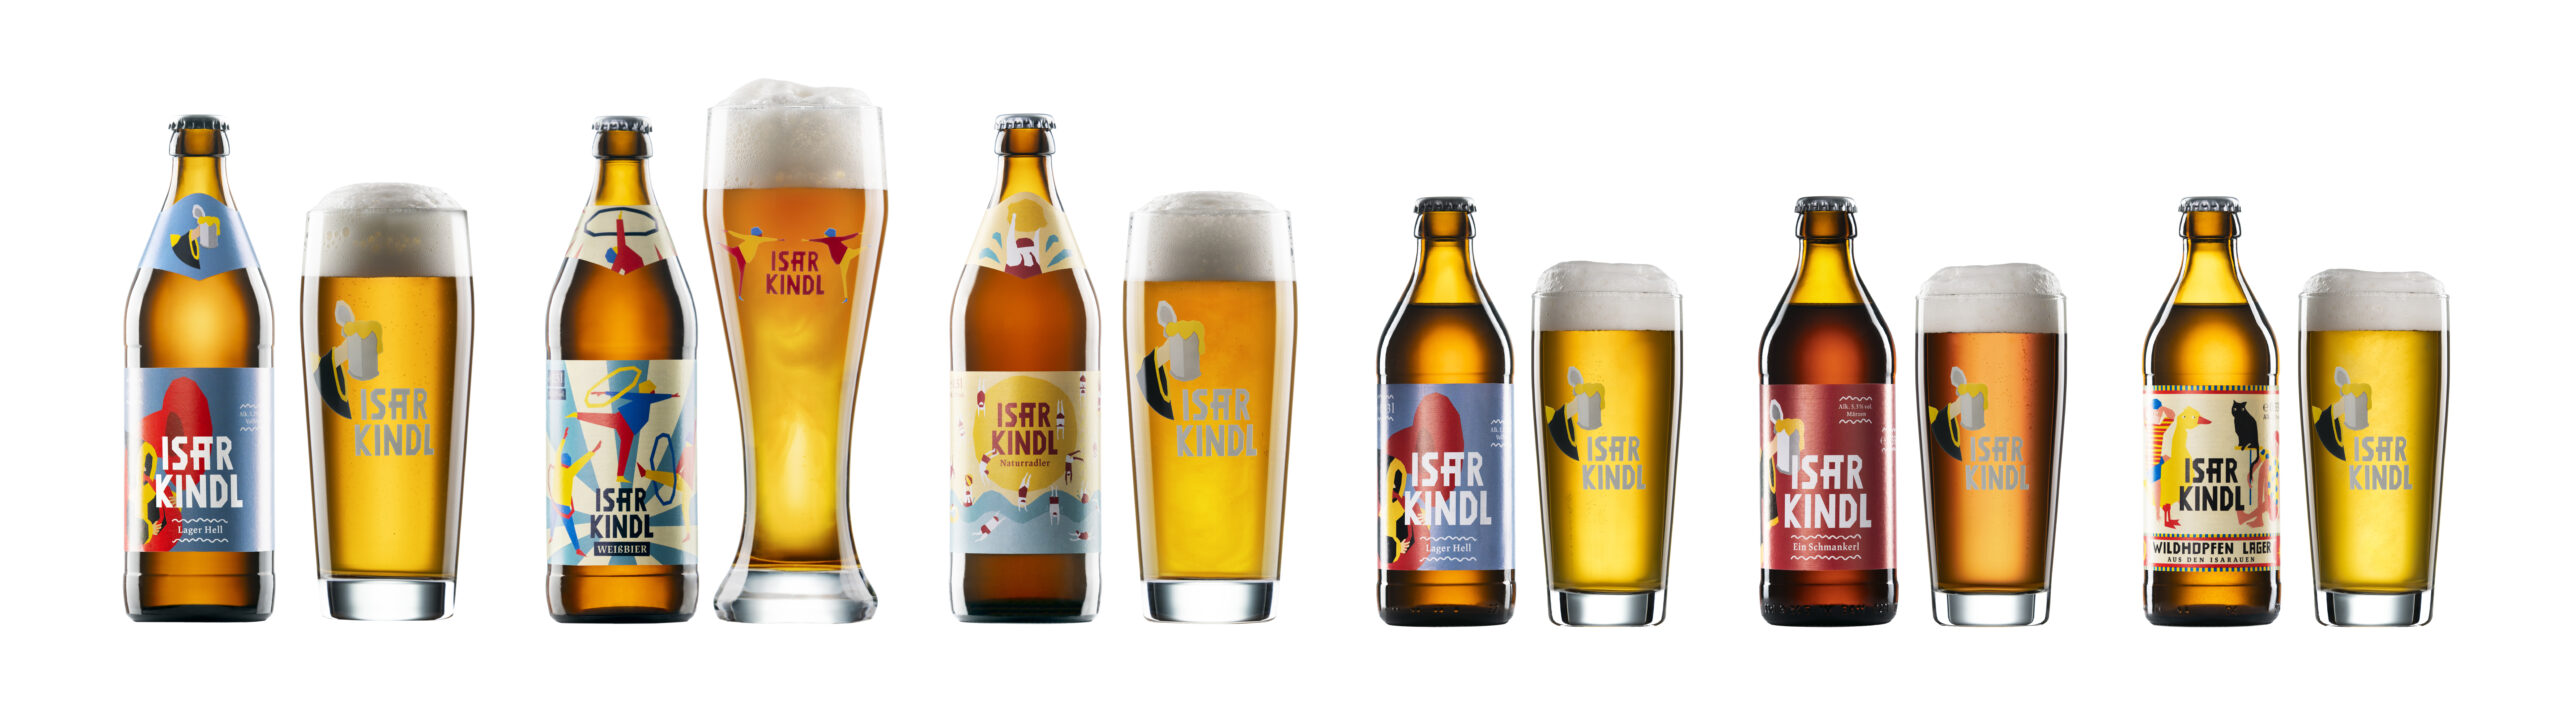 Die Bierbrauer von Isarkindl haben mittlerweile sechs verschiedene Biere im Angebot